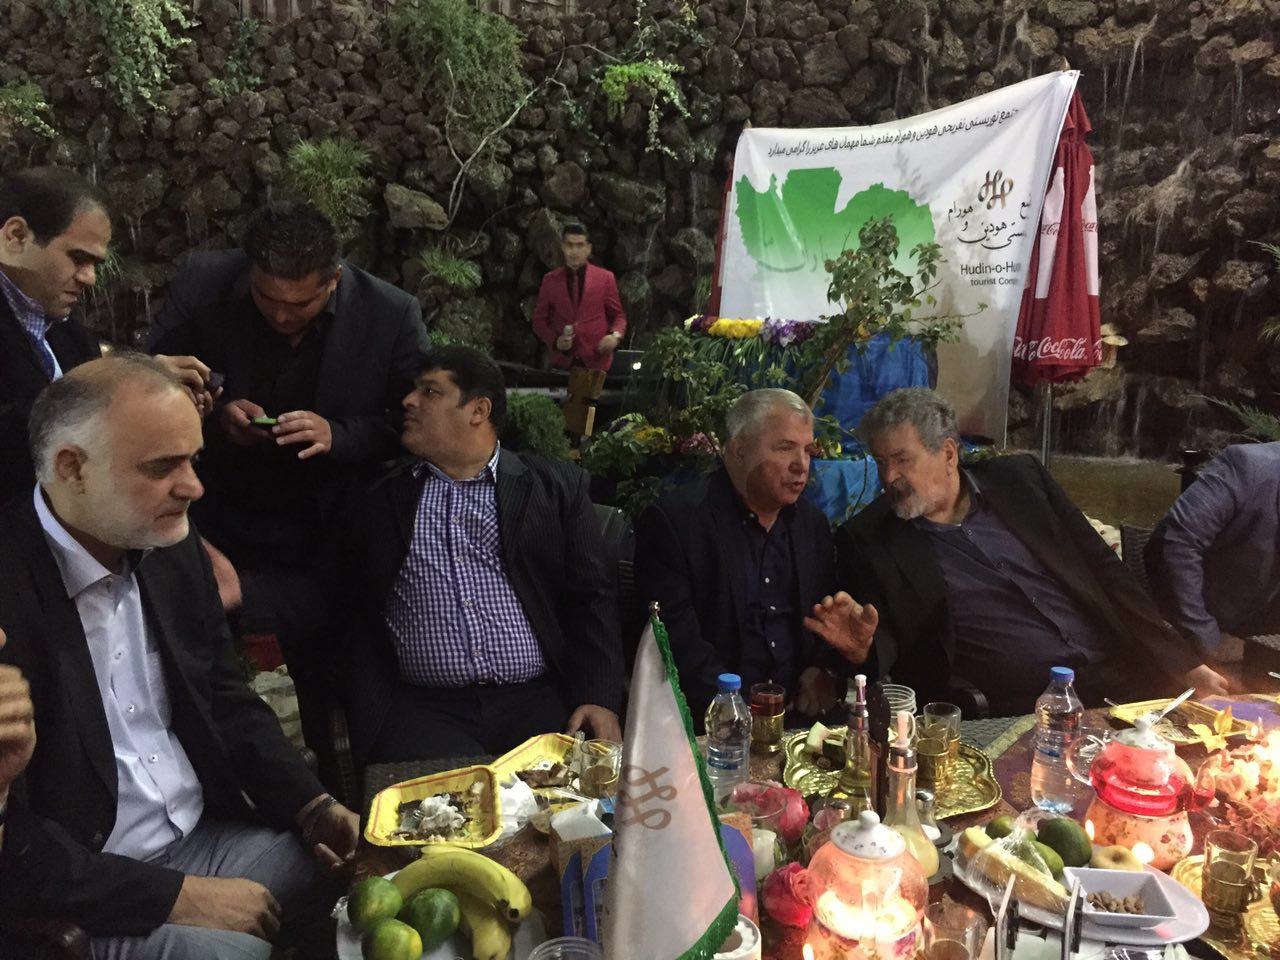 باشگاه حضور در جشن تولد را منع کرد/پیشکسوتان پرسپولیس و منتقدان باشگاه و وزیر کنار پروین نشستند!